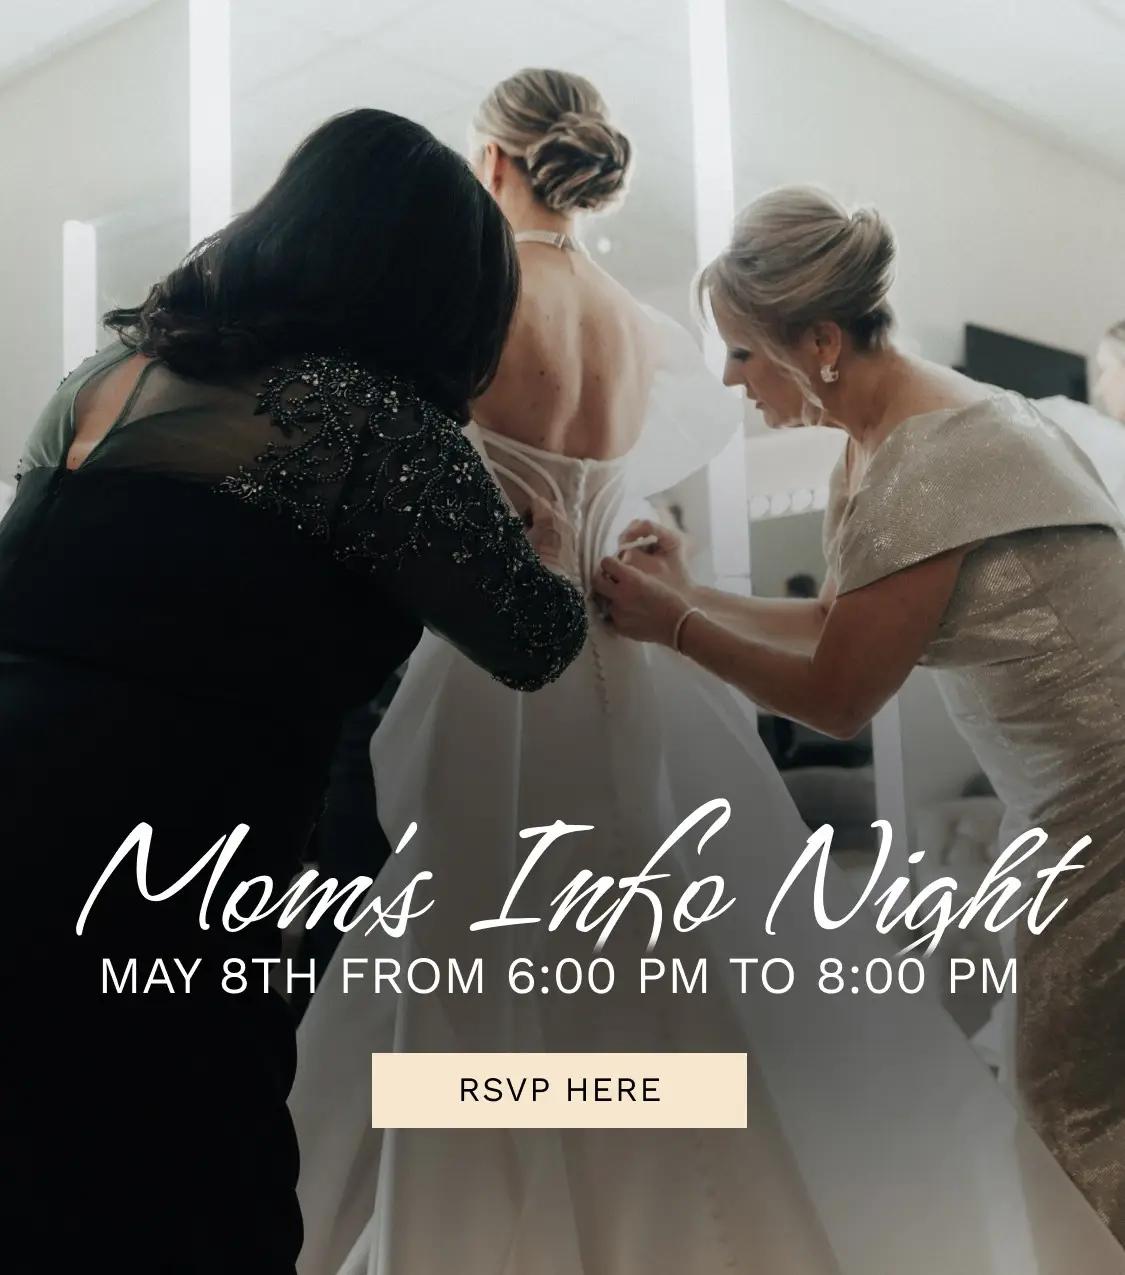 Moms info night banner for mobile